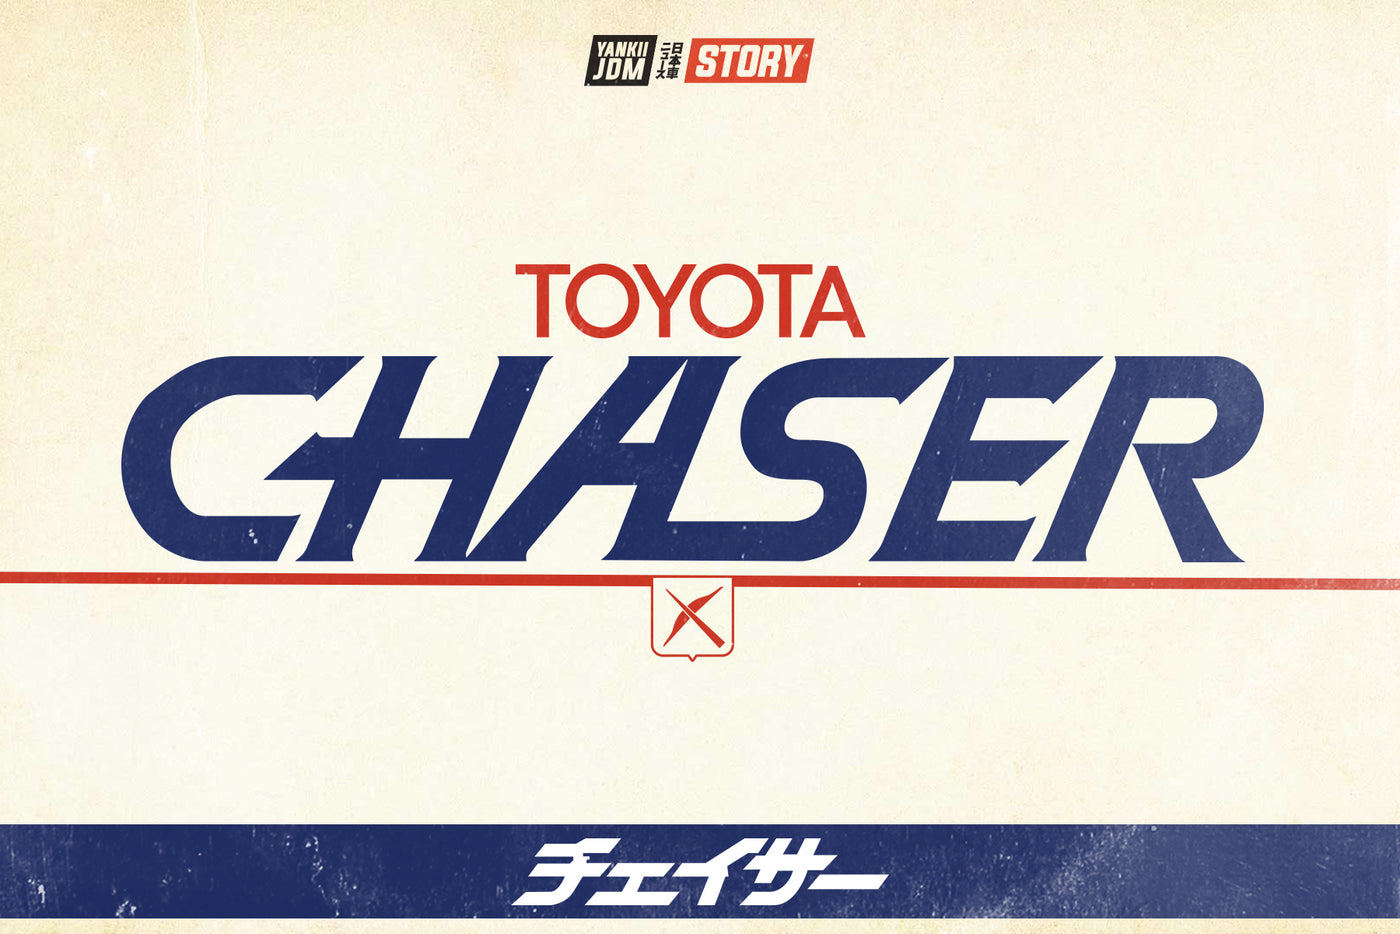 Toyota Chaser History